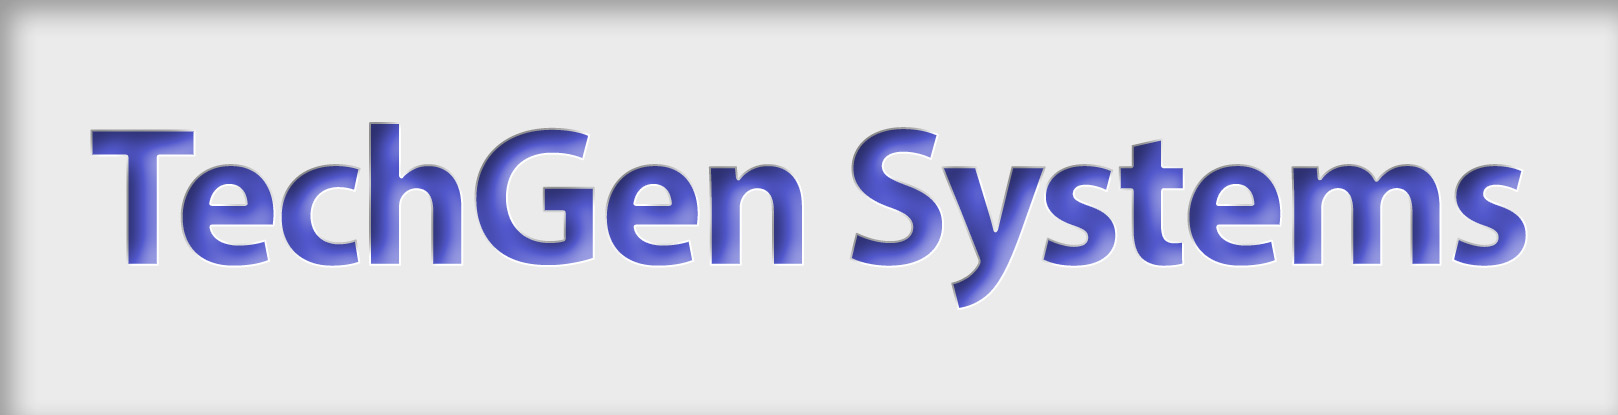 TechGen Systems